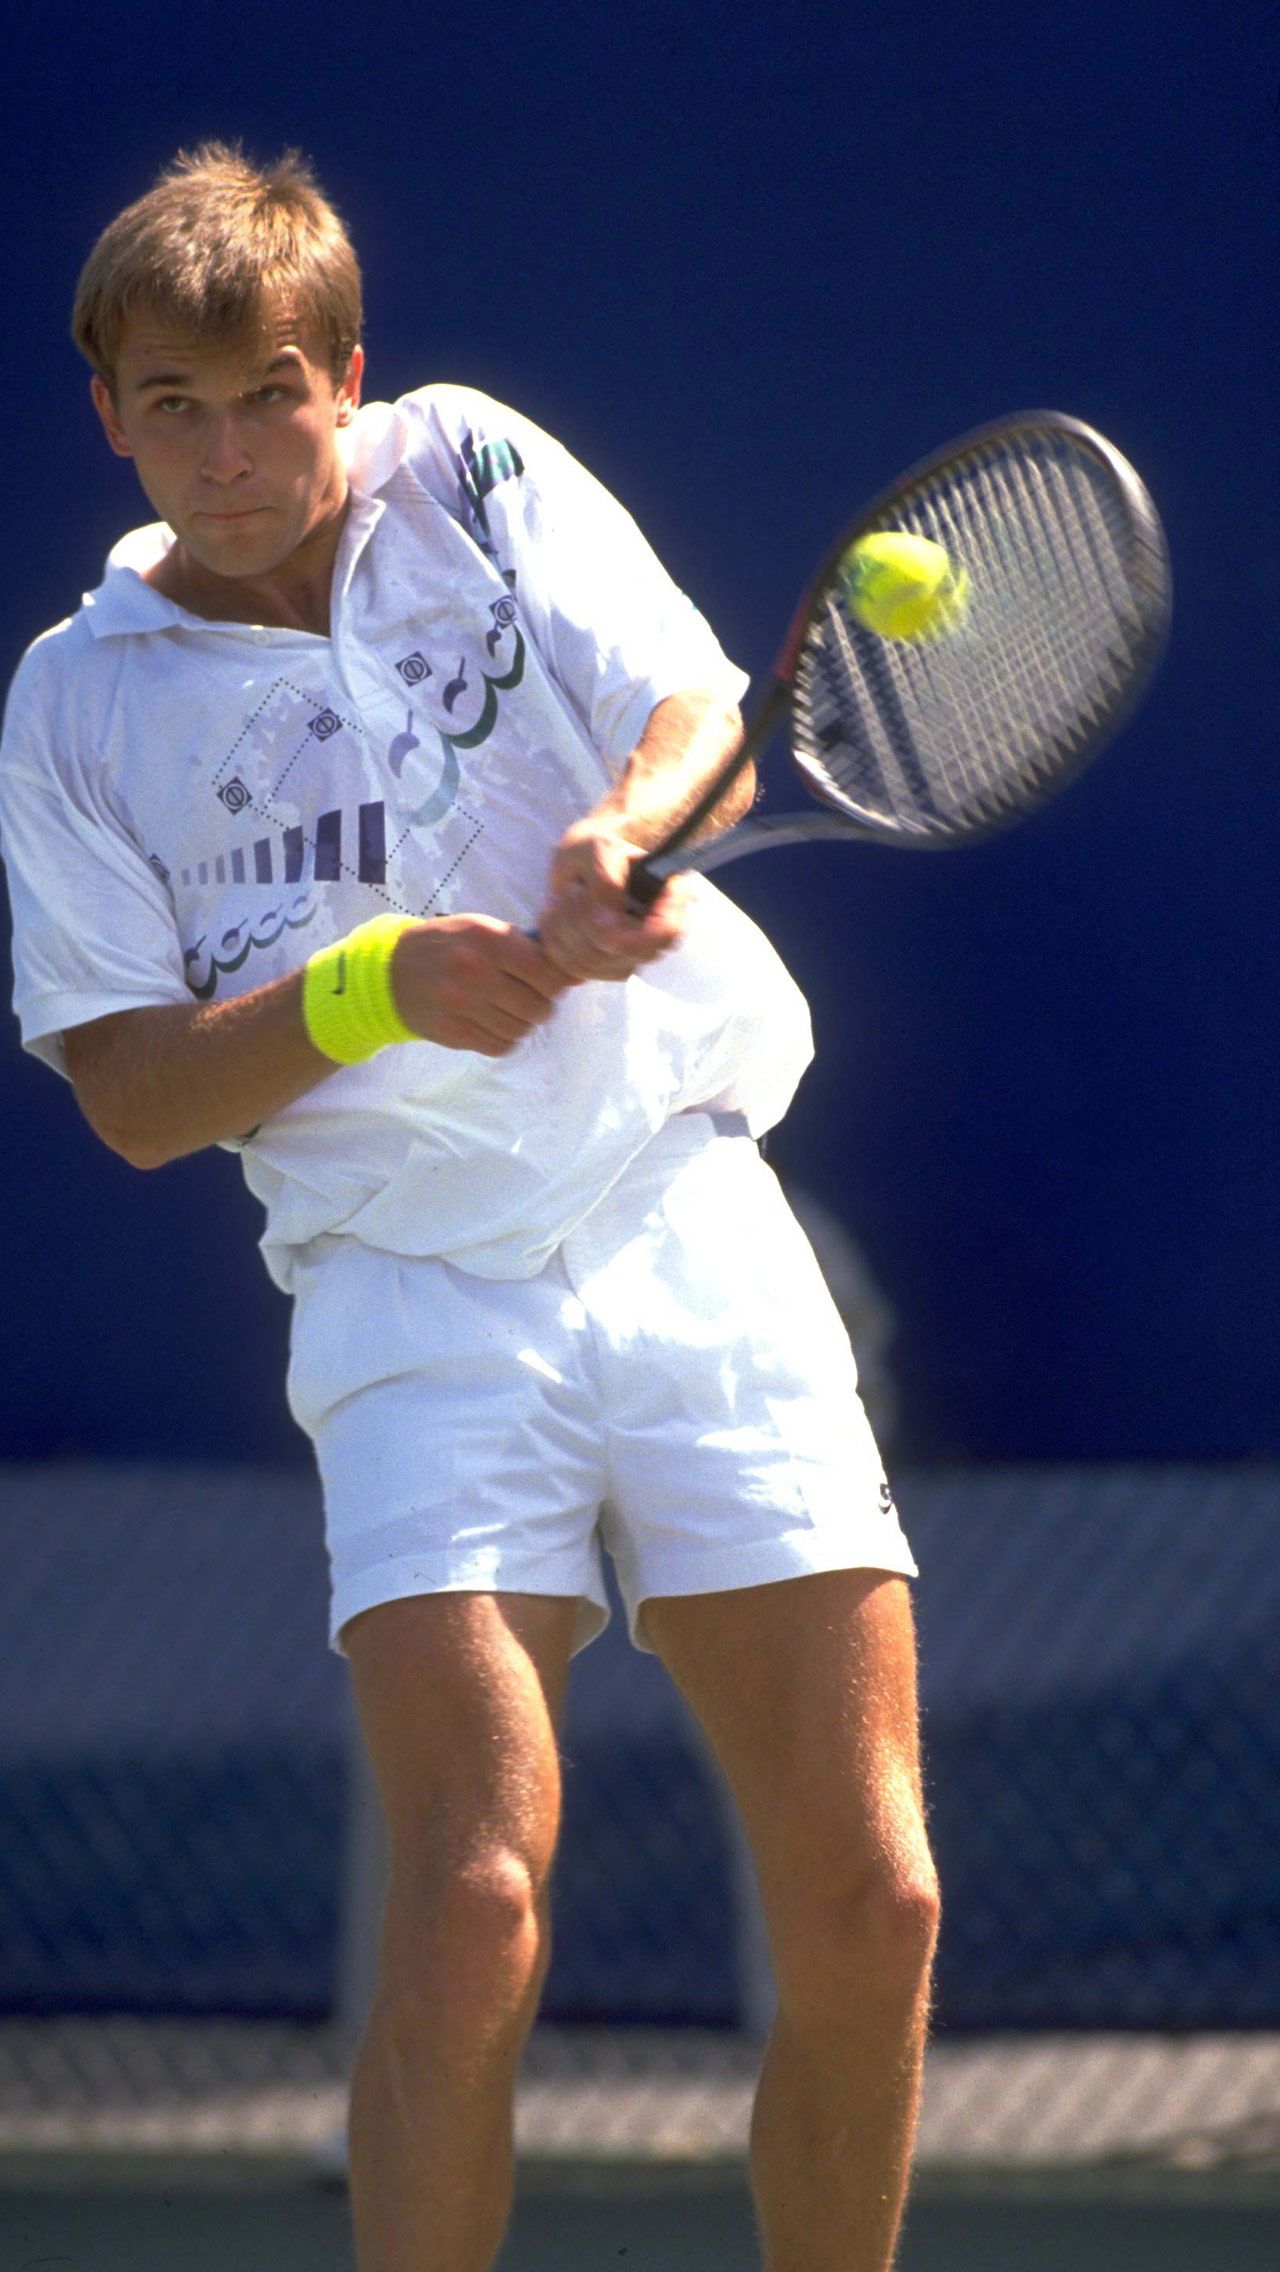 За карьеру Чесноков завоевал семь титулов ATP, в том числе выиграл два «Мастерса» — Монте-Карло-1990 и Монреаль-1991. Андрей был девятой ракеткой мира.